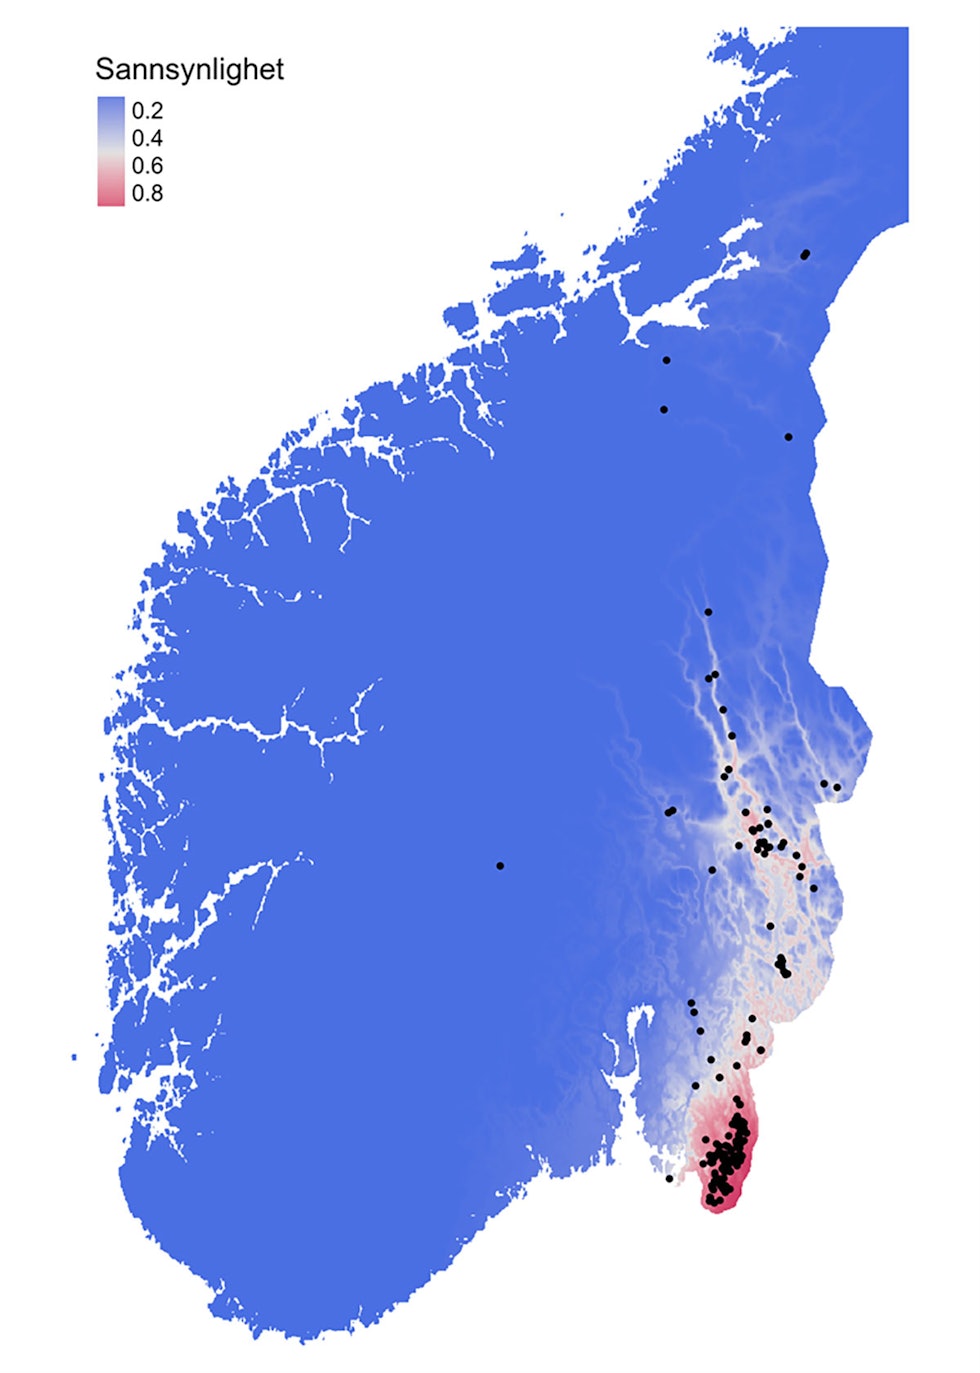 Modellert utbredelse av villsvin på kart over Sør-Norge. 